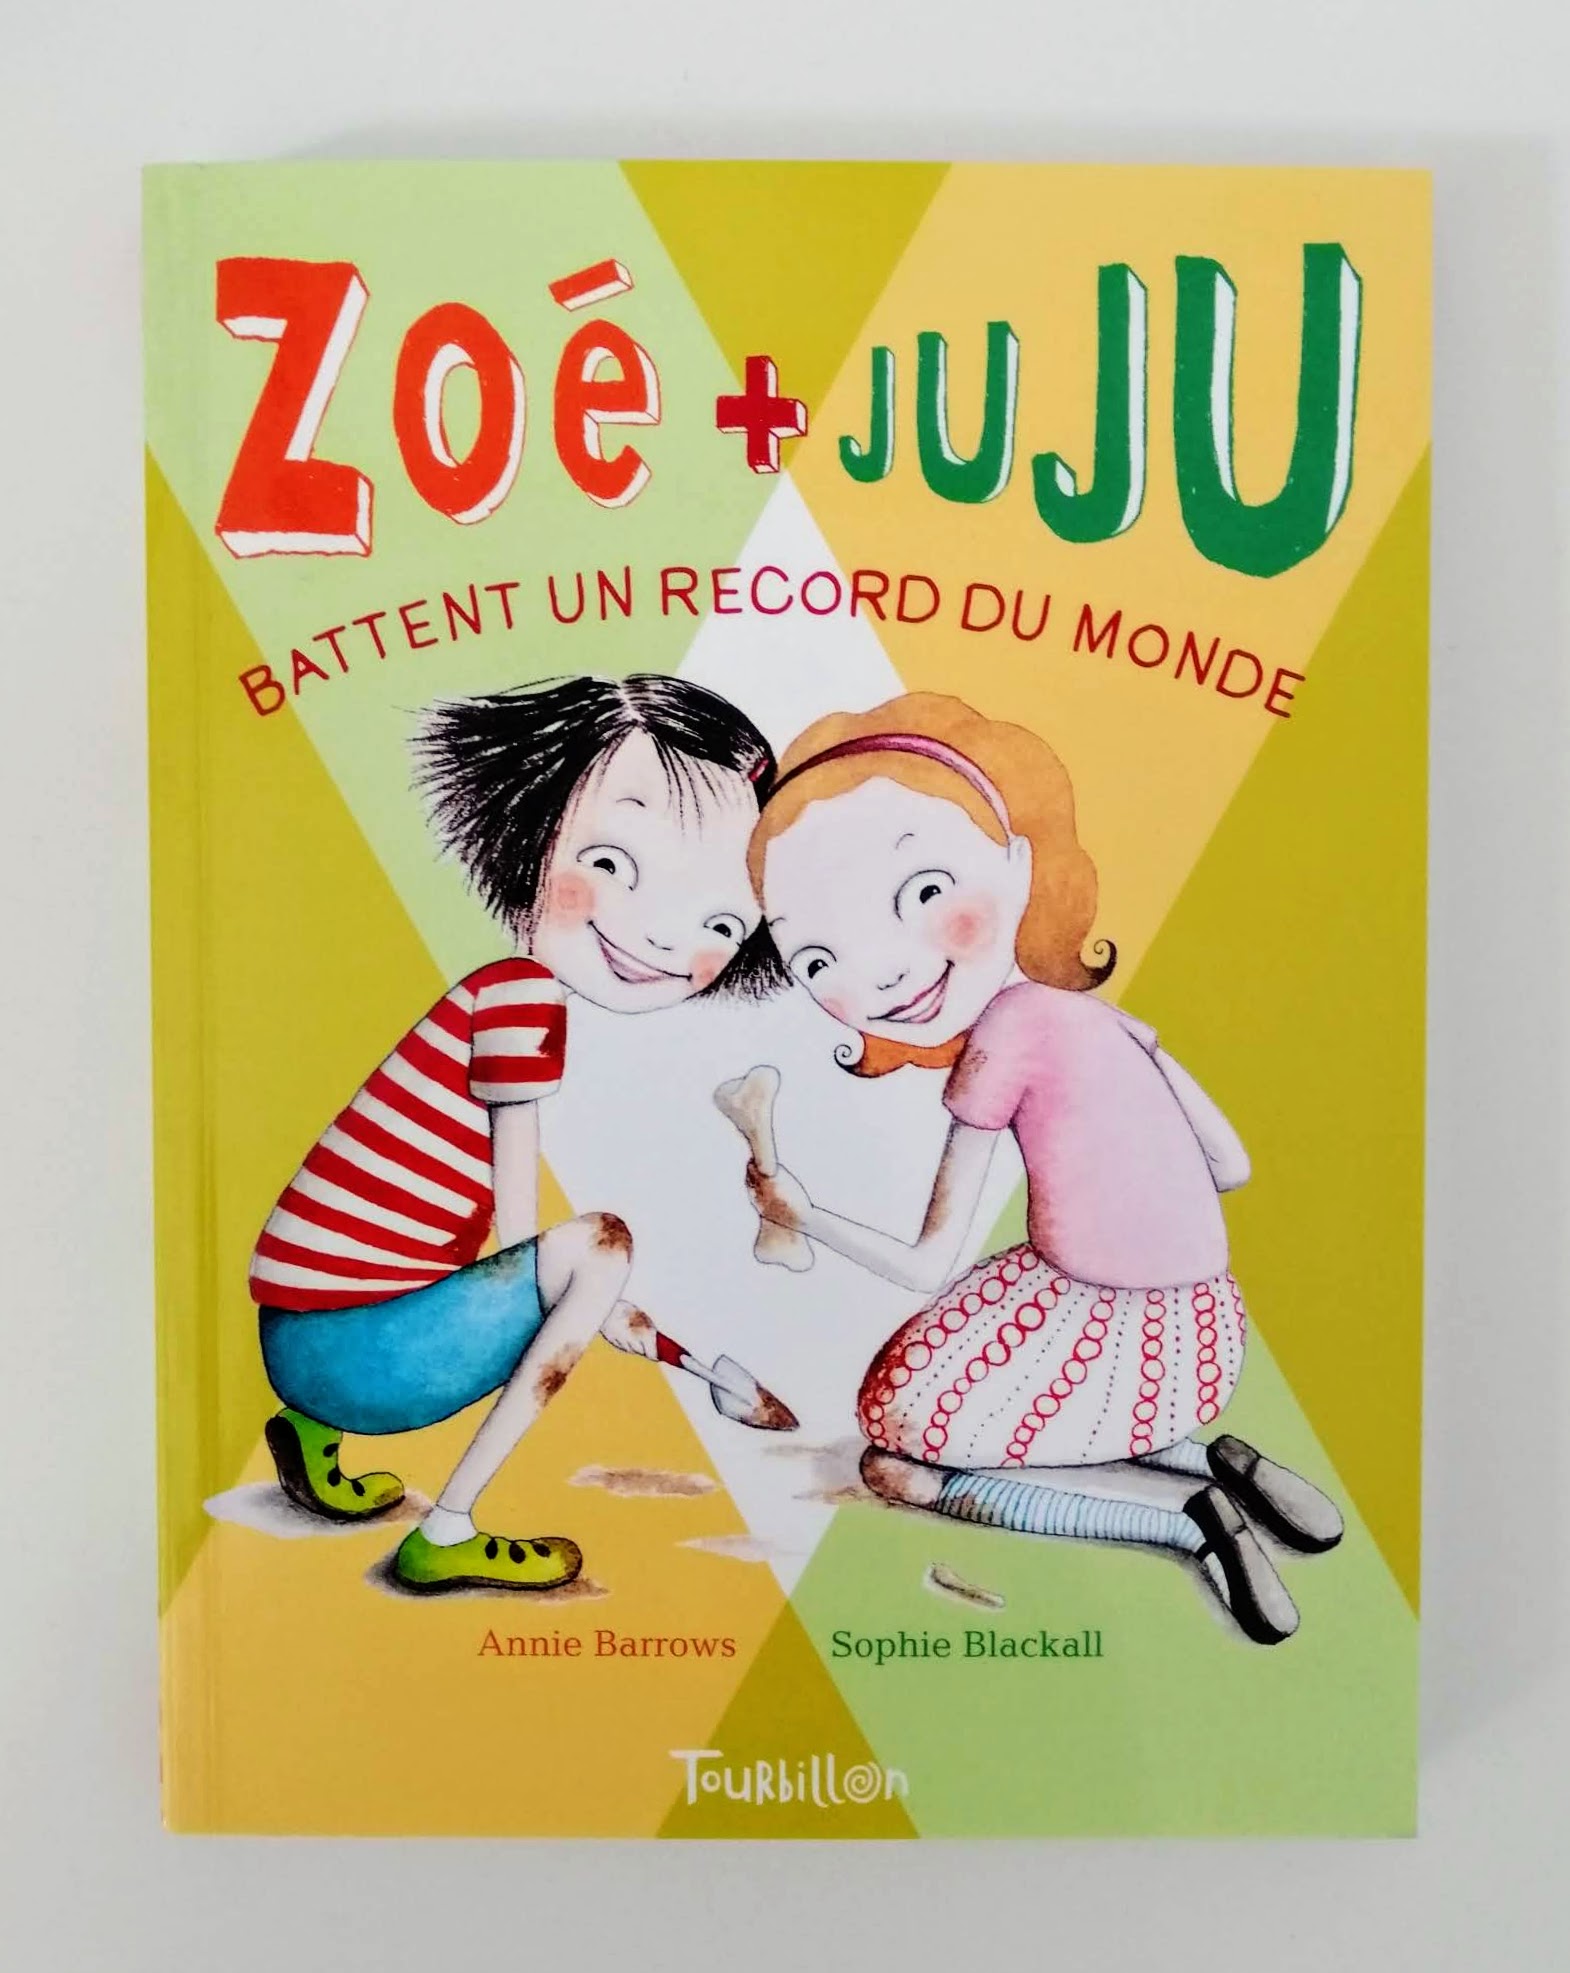 Zoé + Juju battent un record Annie Barrows et Sophie Blackall